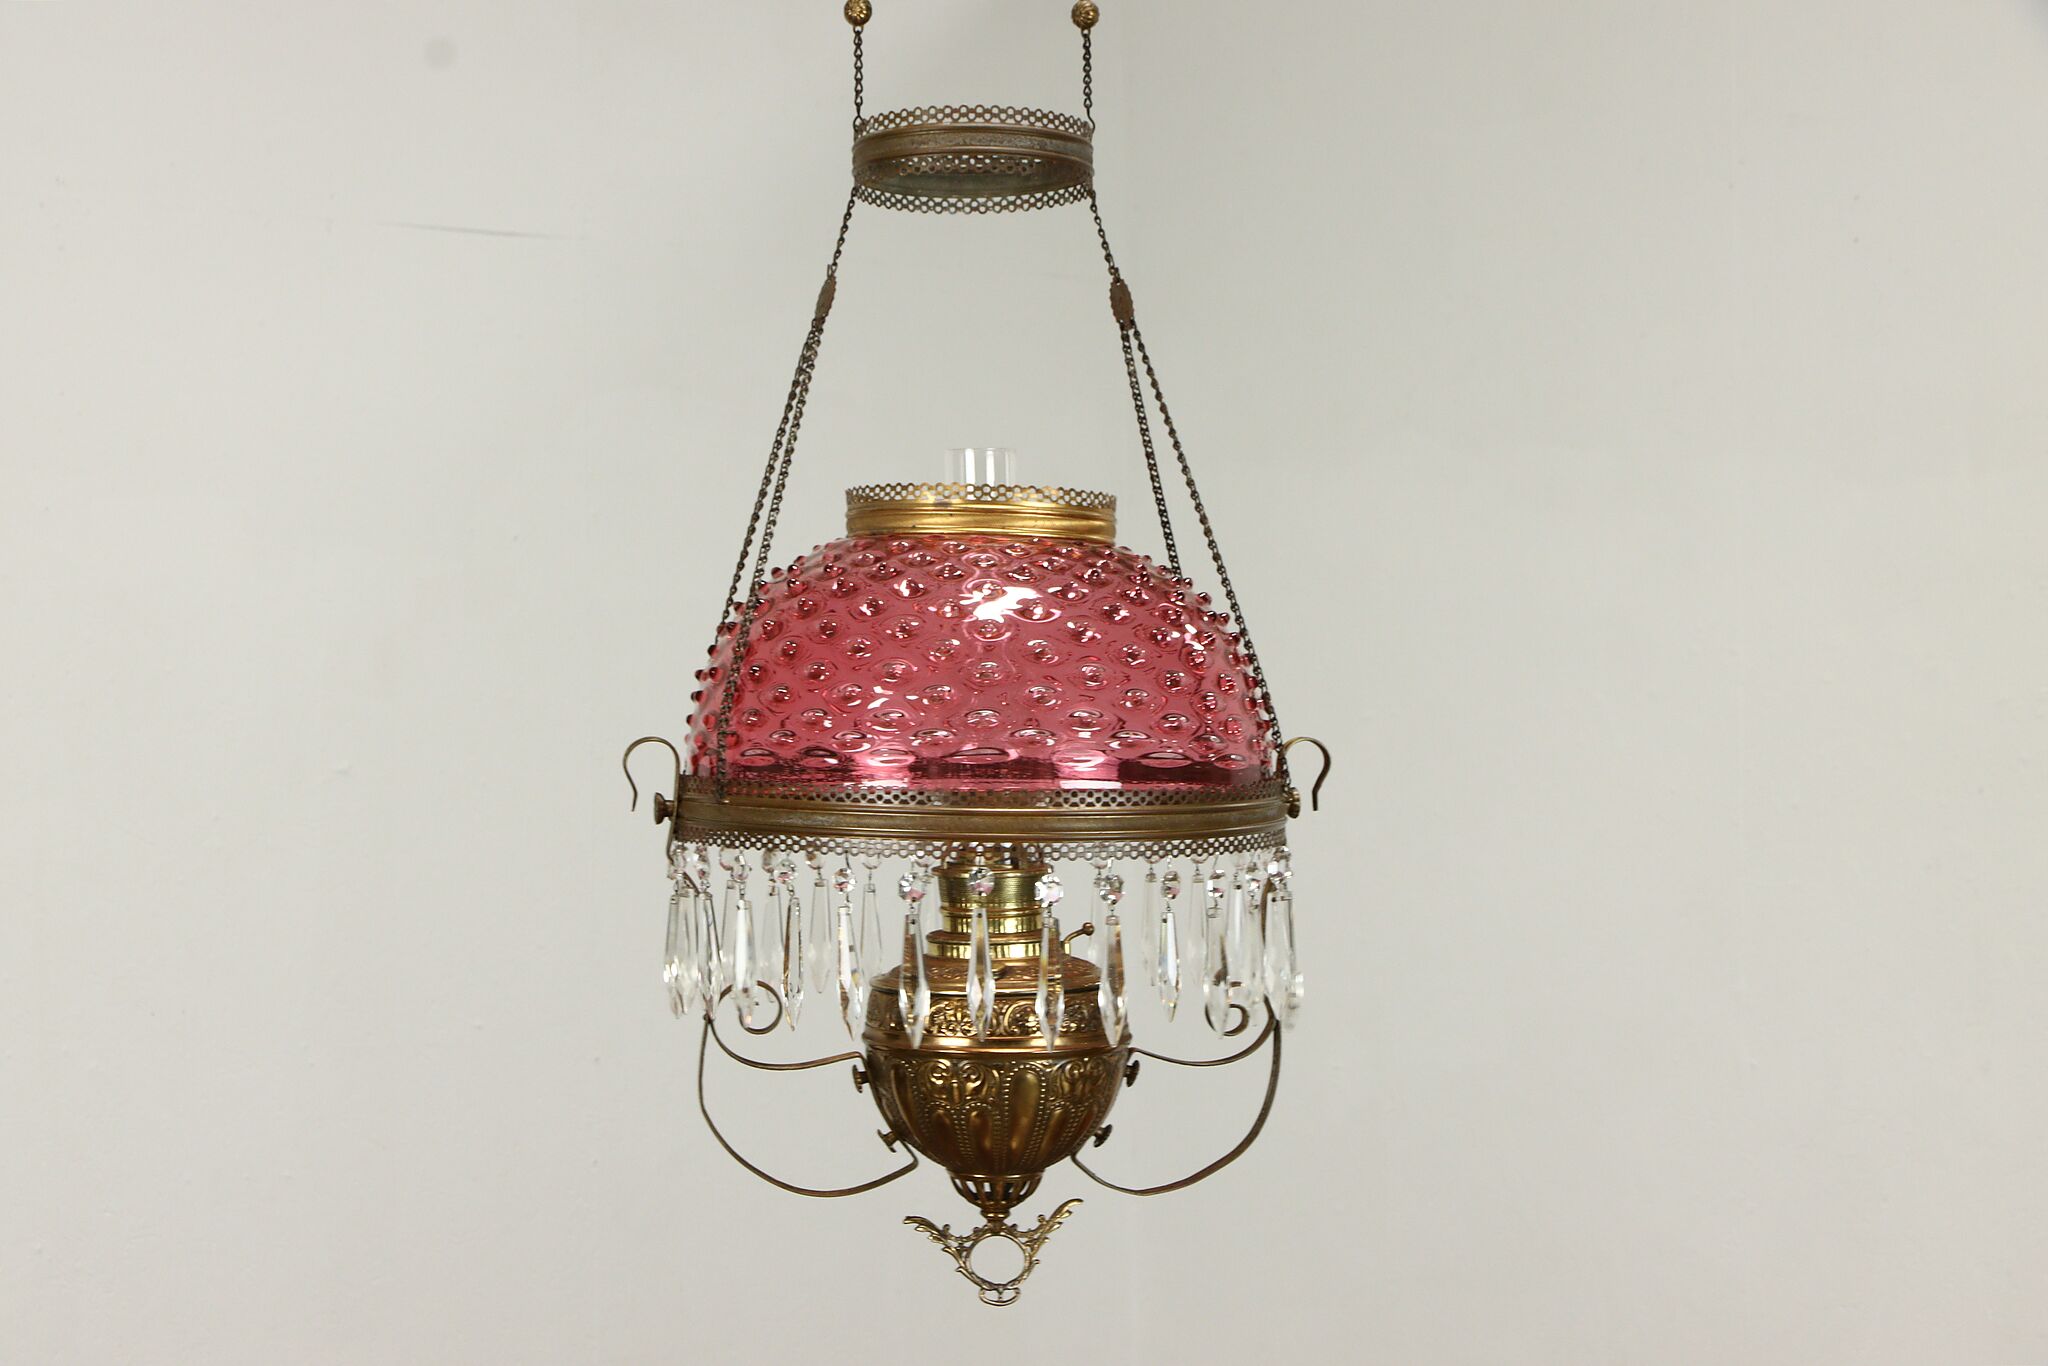 Vintage Kerosene Pendant Light Glass Iron Ceiling Fixtures Led Lamp Chandelier 